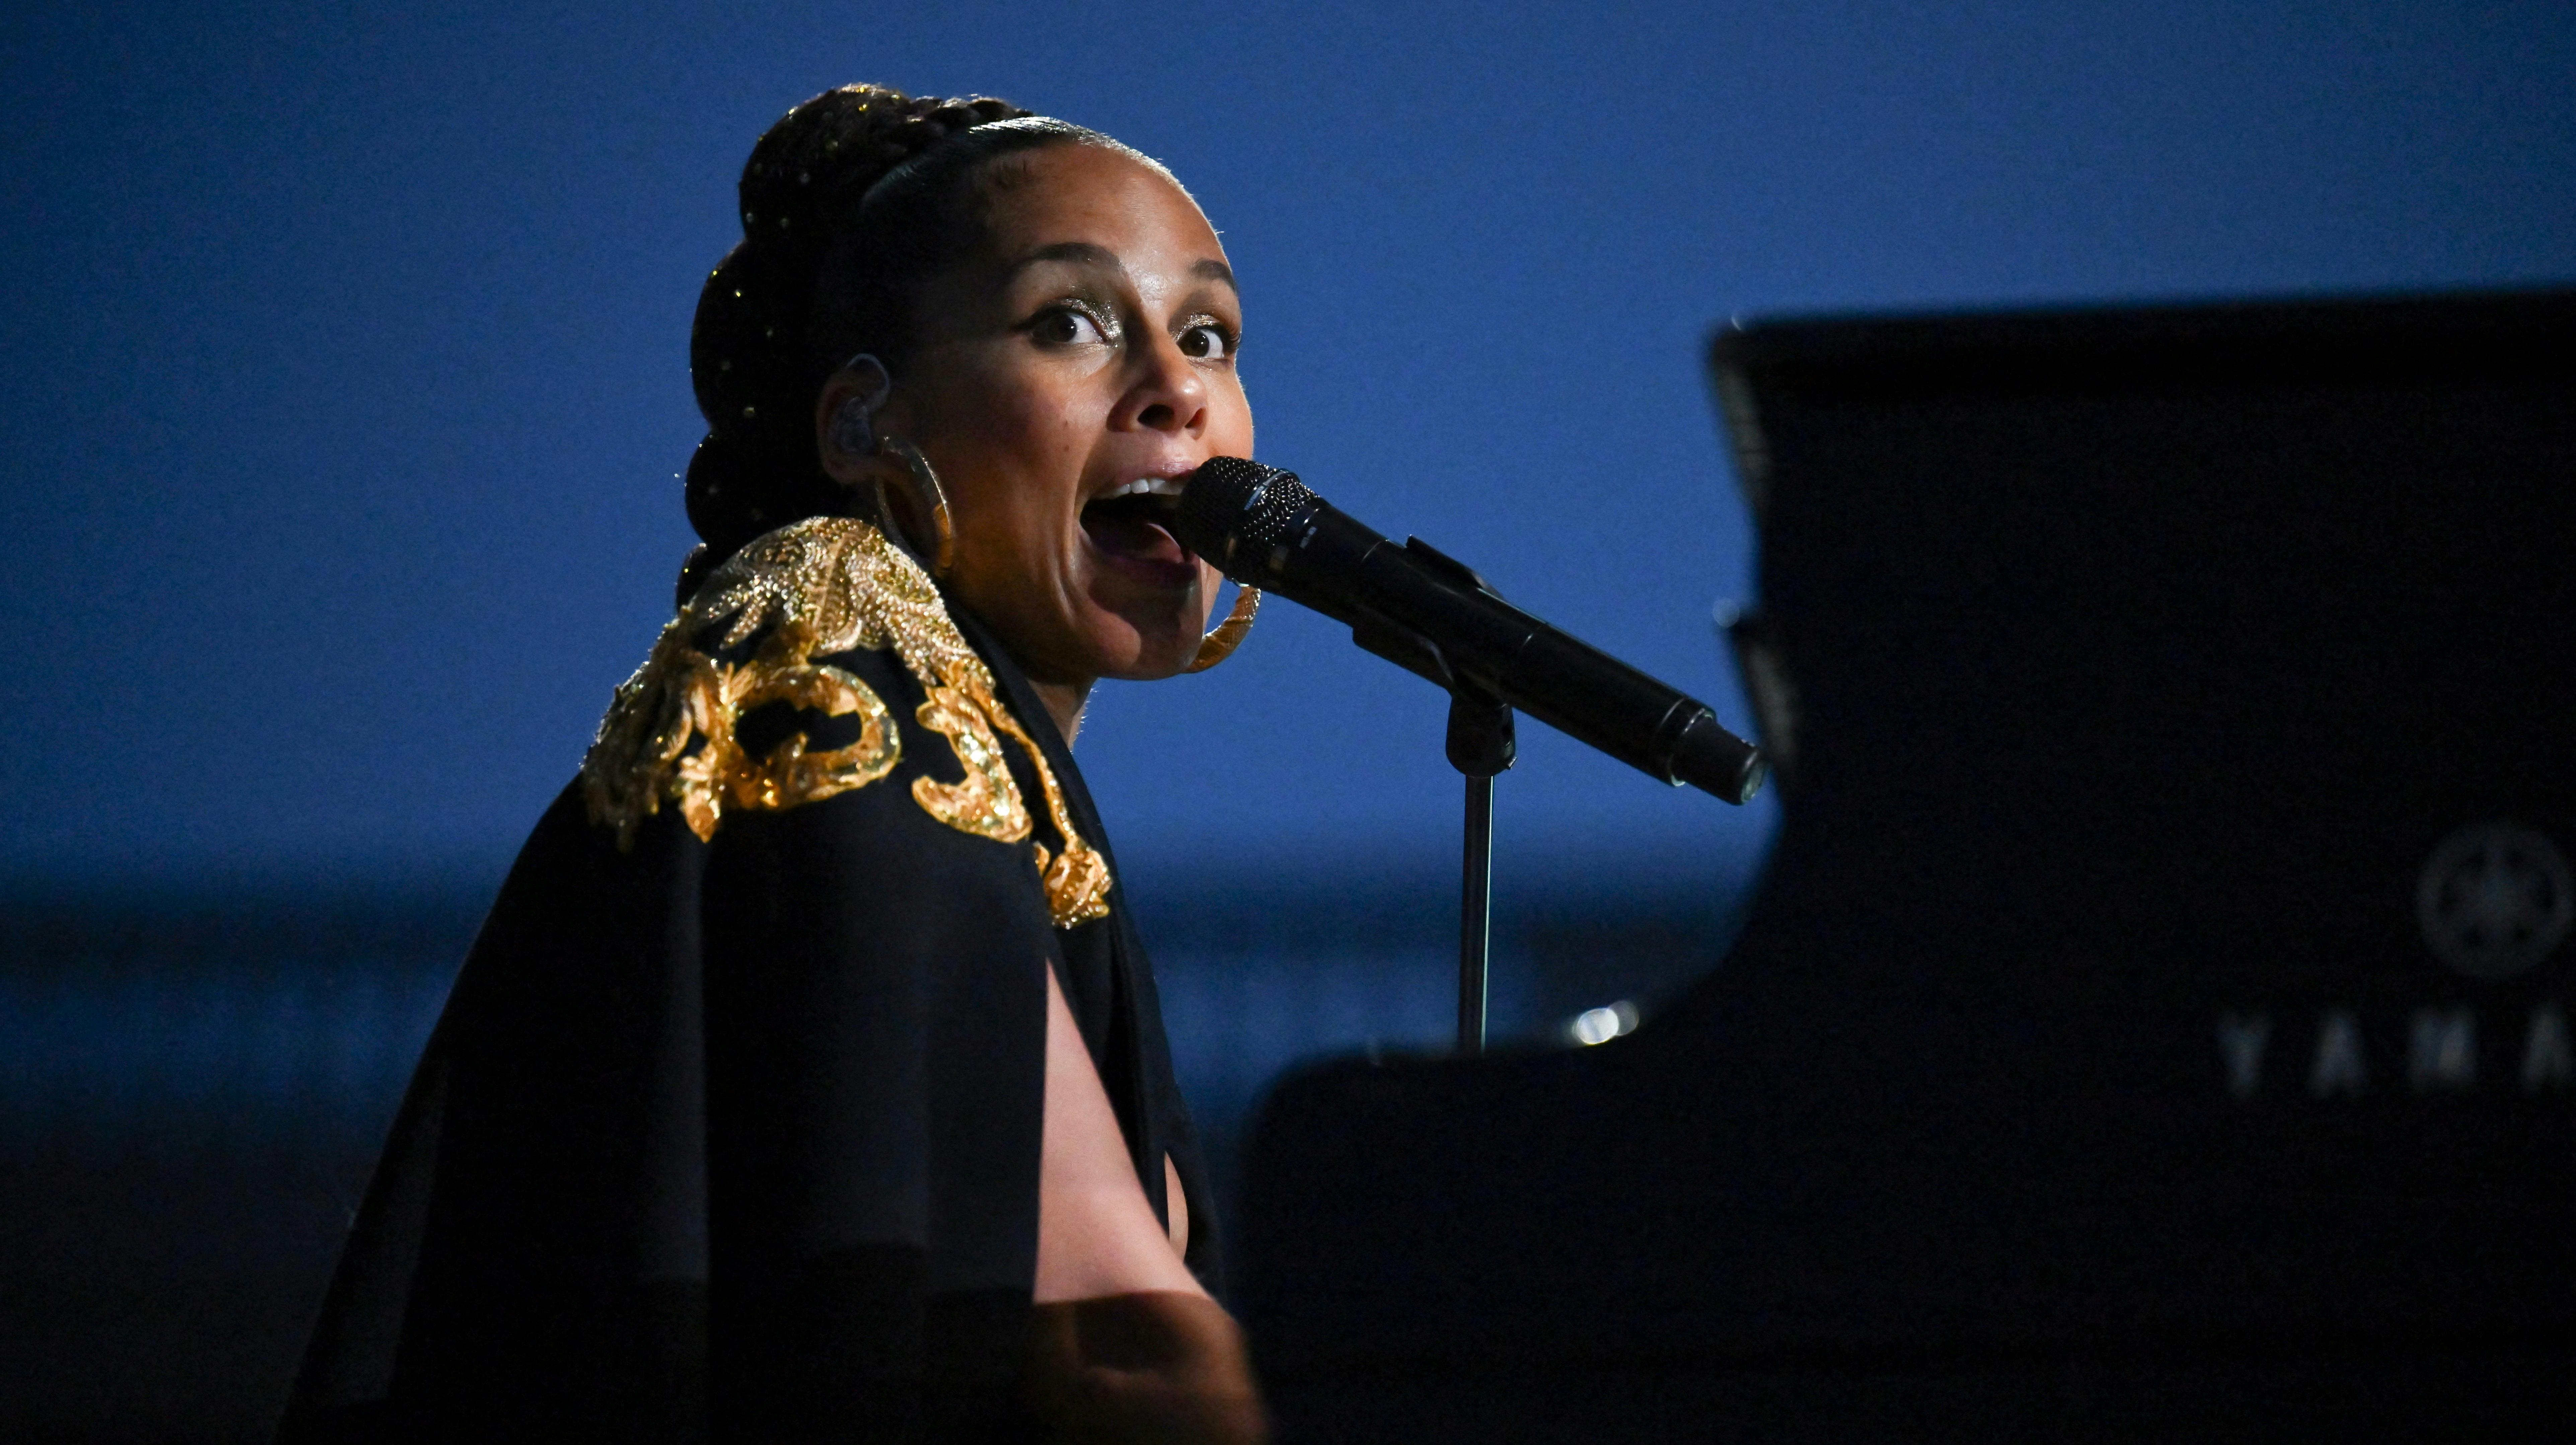 Alicia Keys fik sig noget af en overraskelse, da hun kom tæt på fans under en koncert.